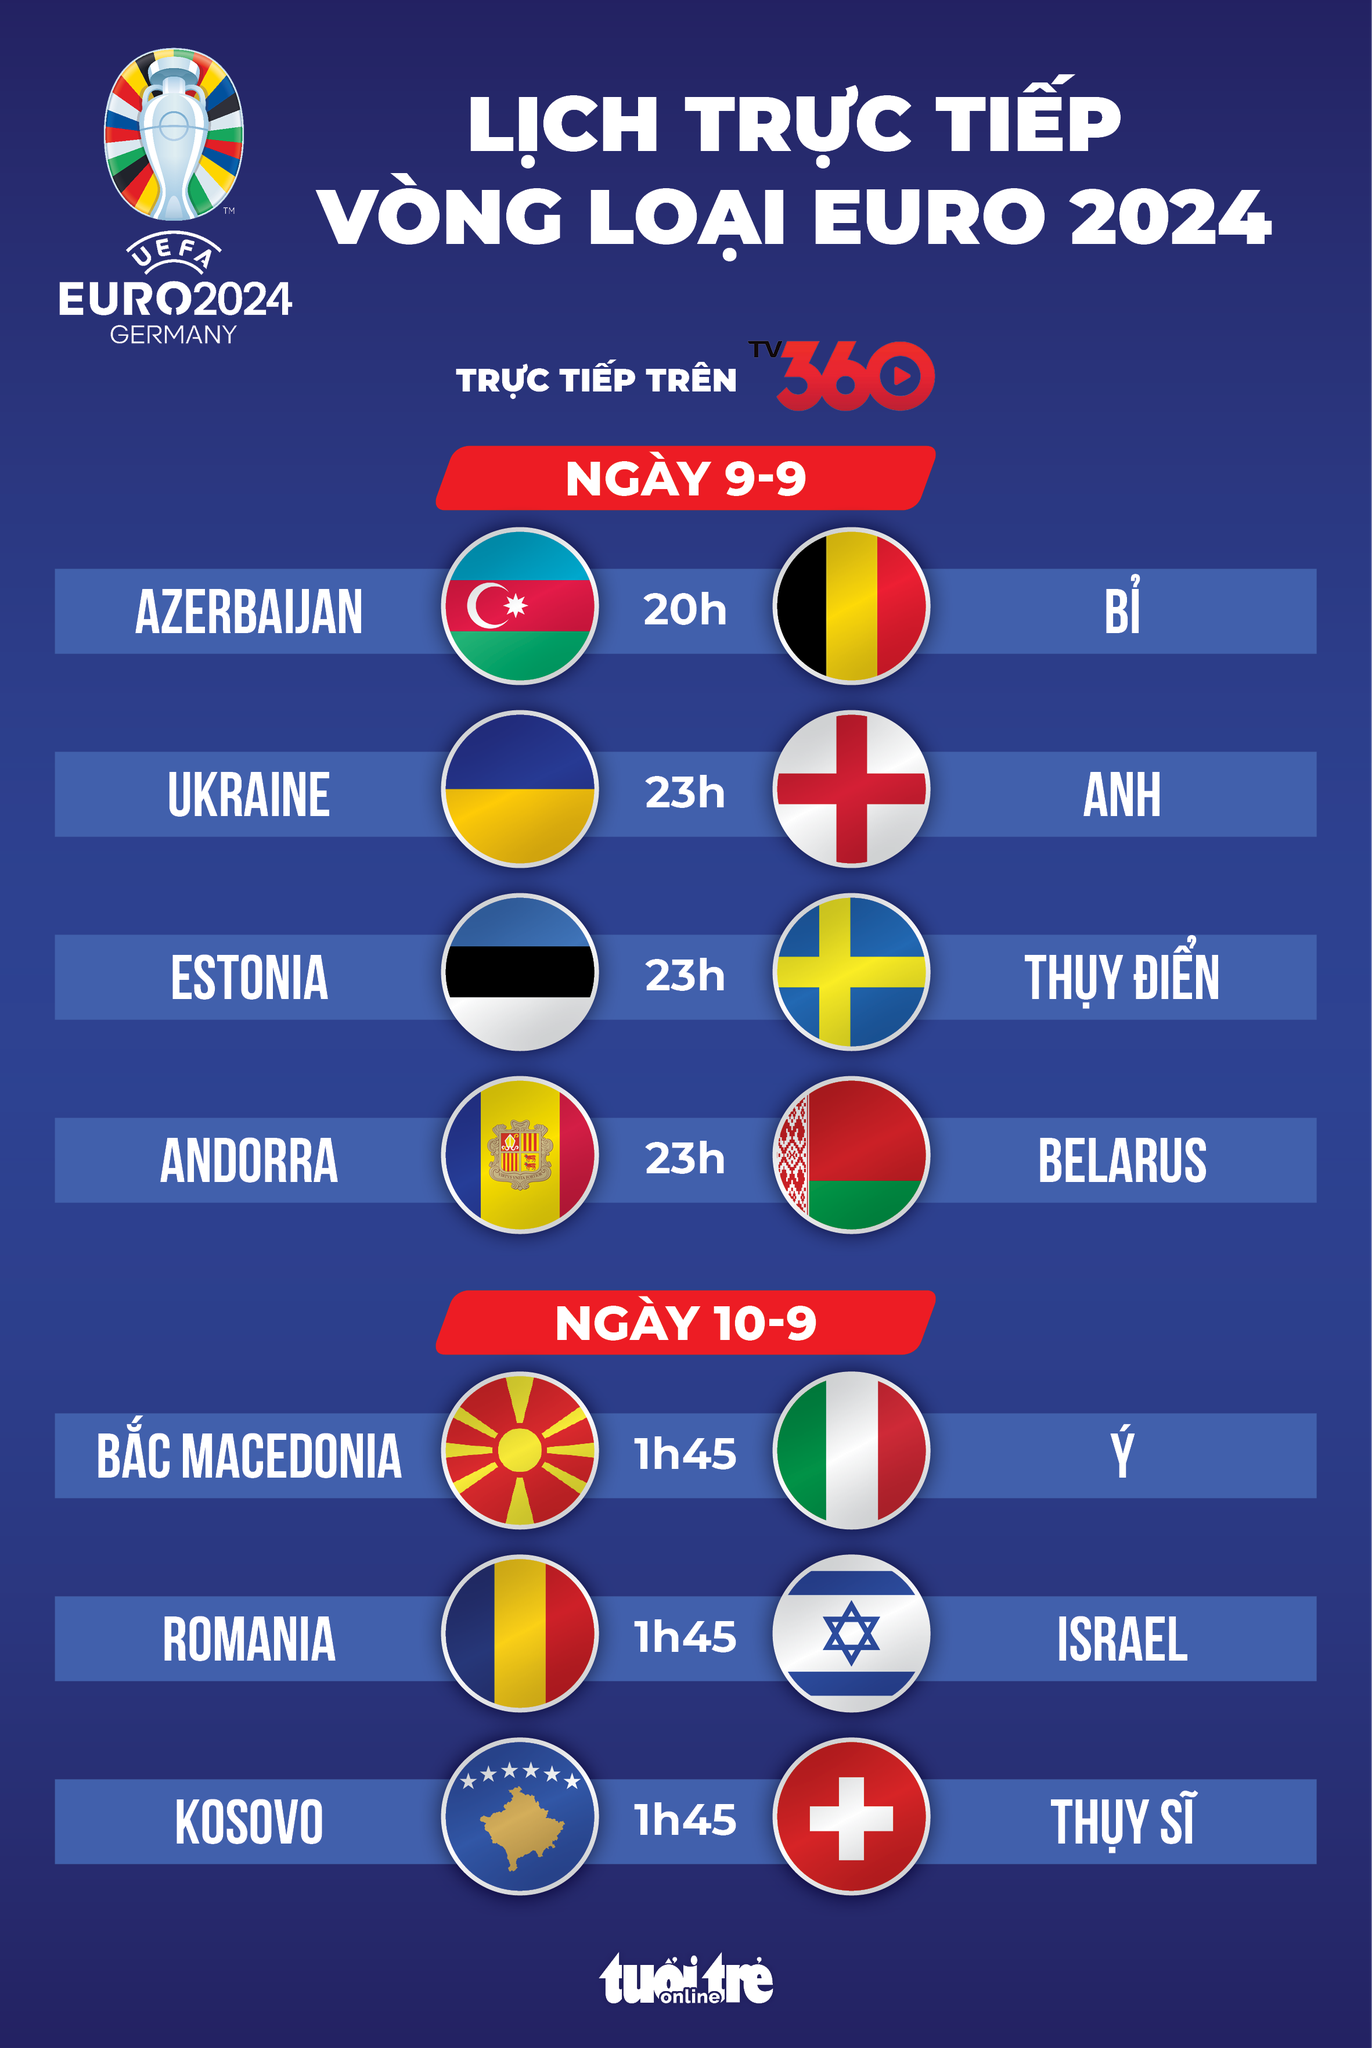 Lịch trực tiếp vòng loại Euro 2024: Anh, Bỉ, Ý ra sân - Ảnh 1.